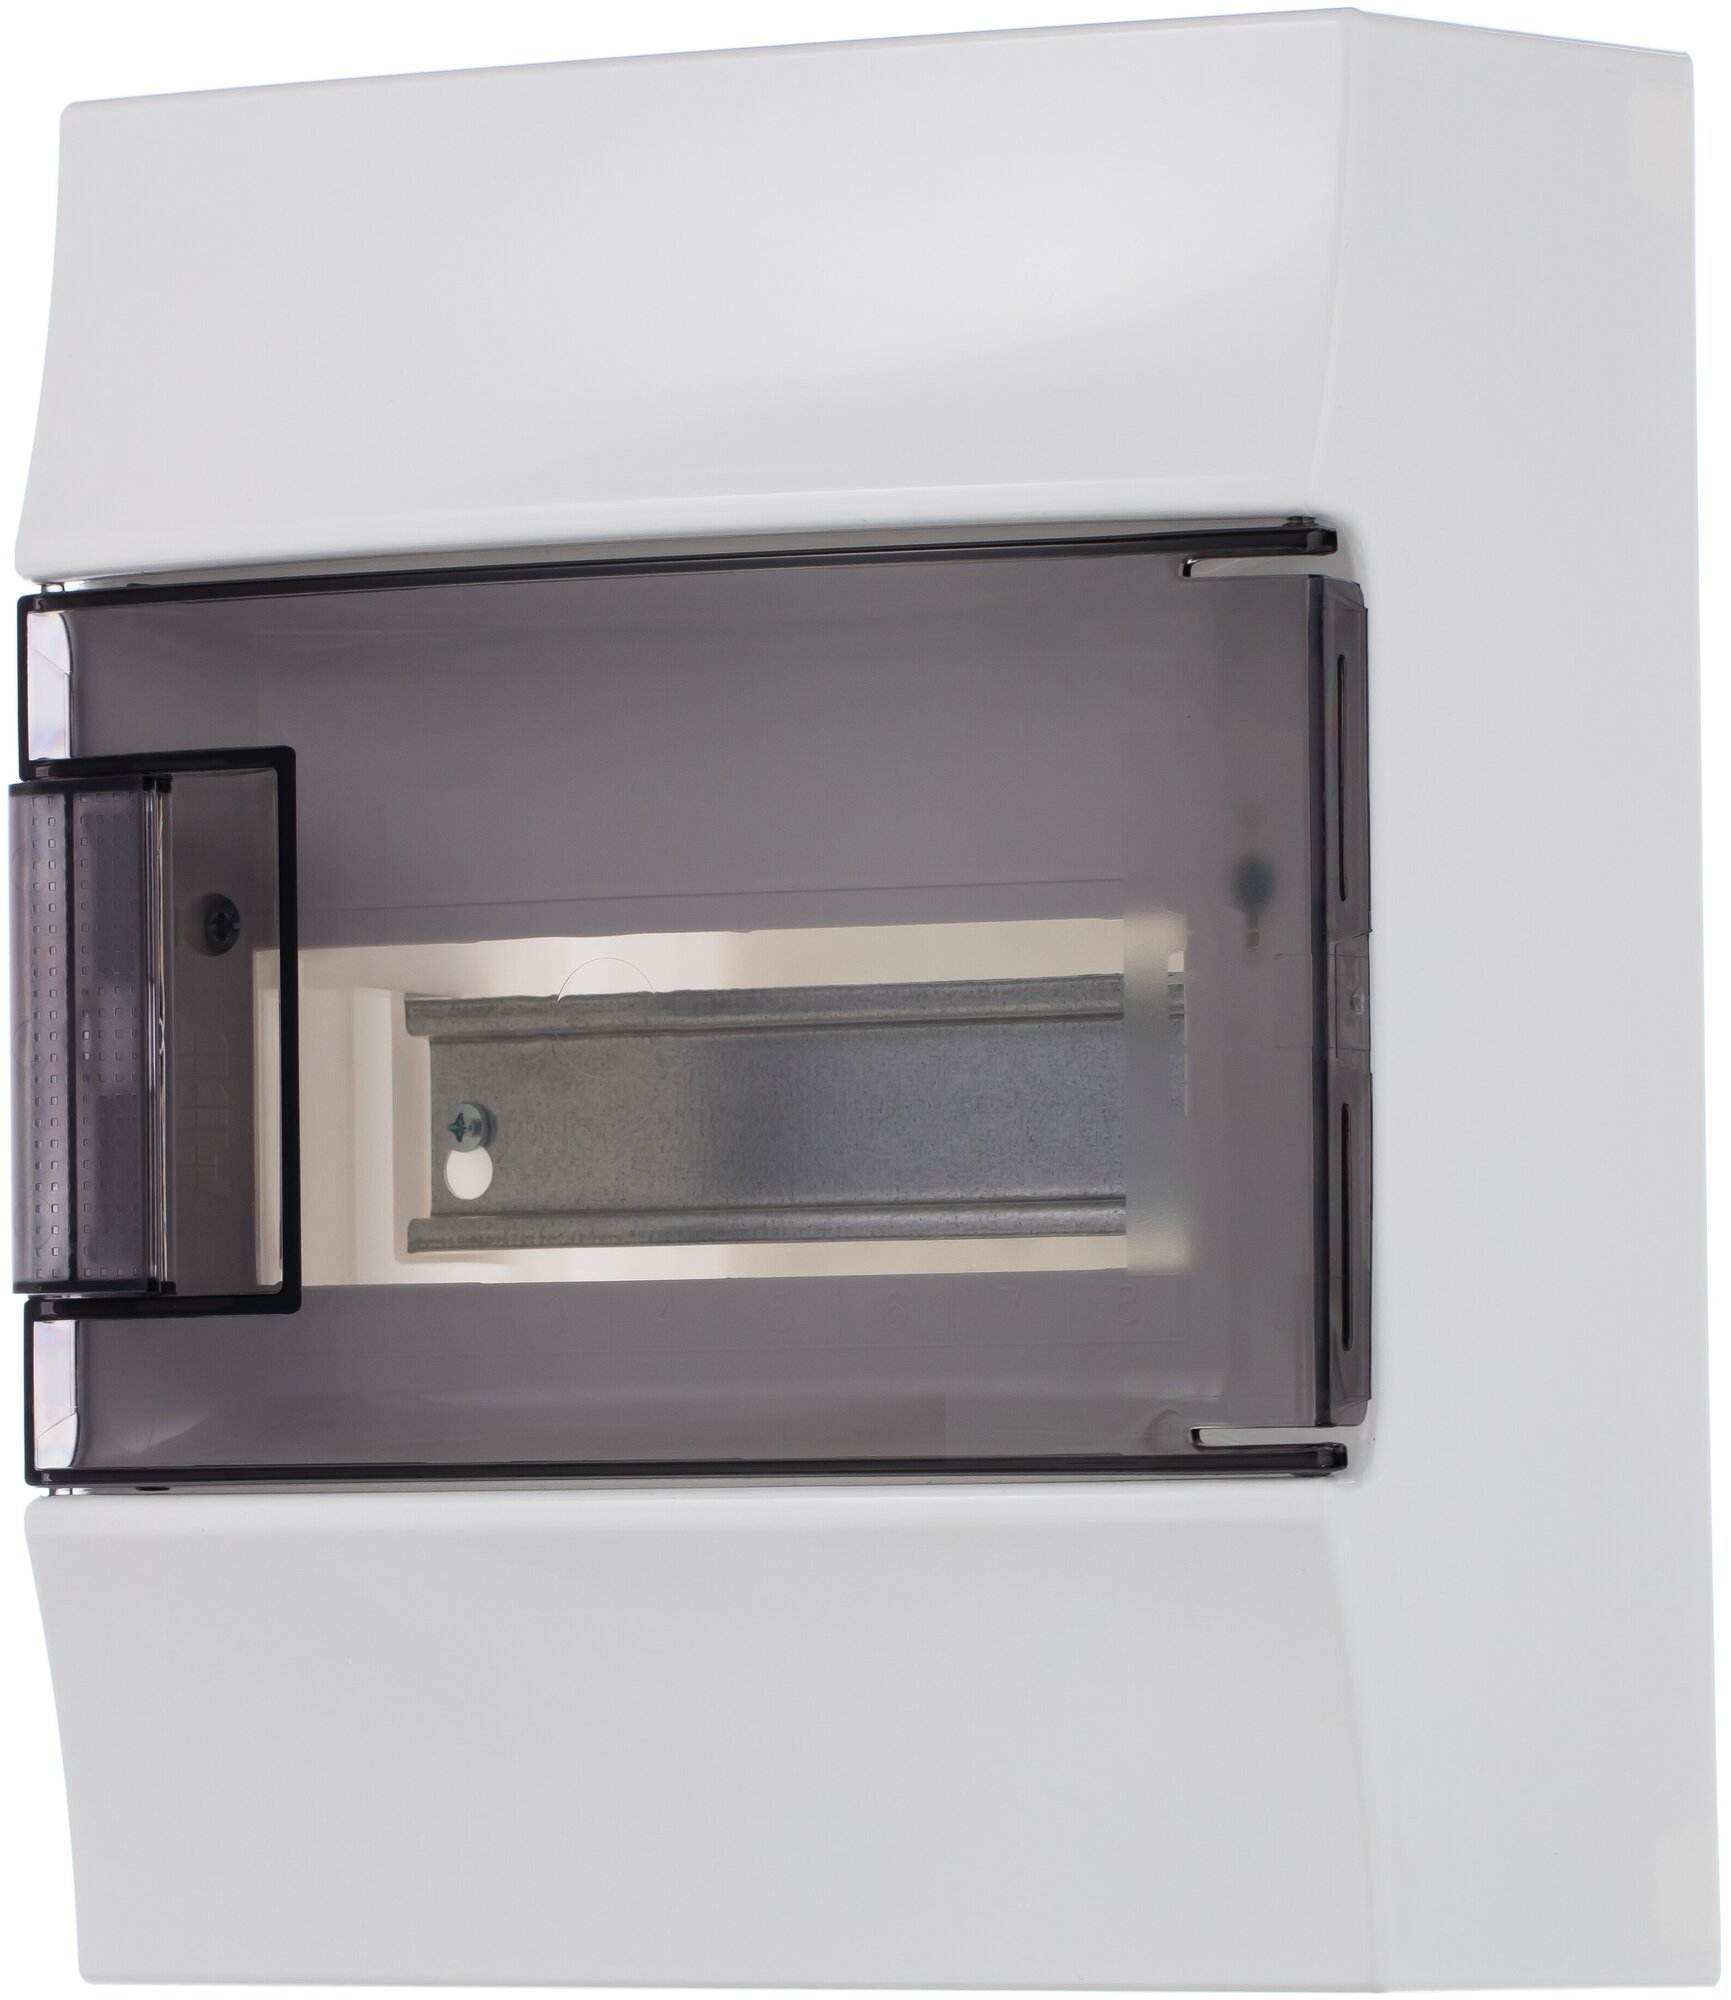 Щит распределительный настенный ABB Mistral41 8М прозрачная дверь, c клеммниками, (1SPE007717F9991)